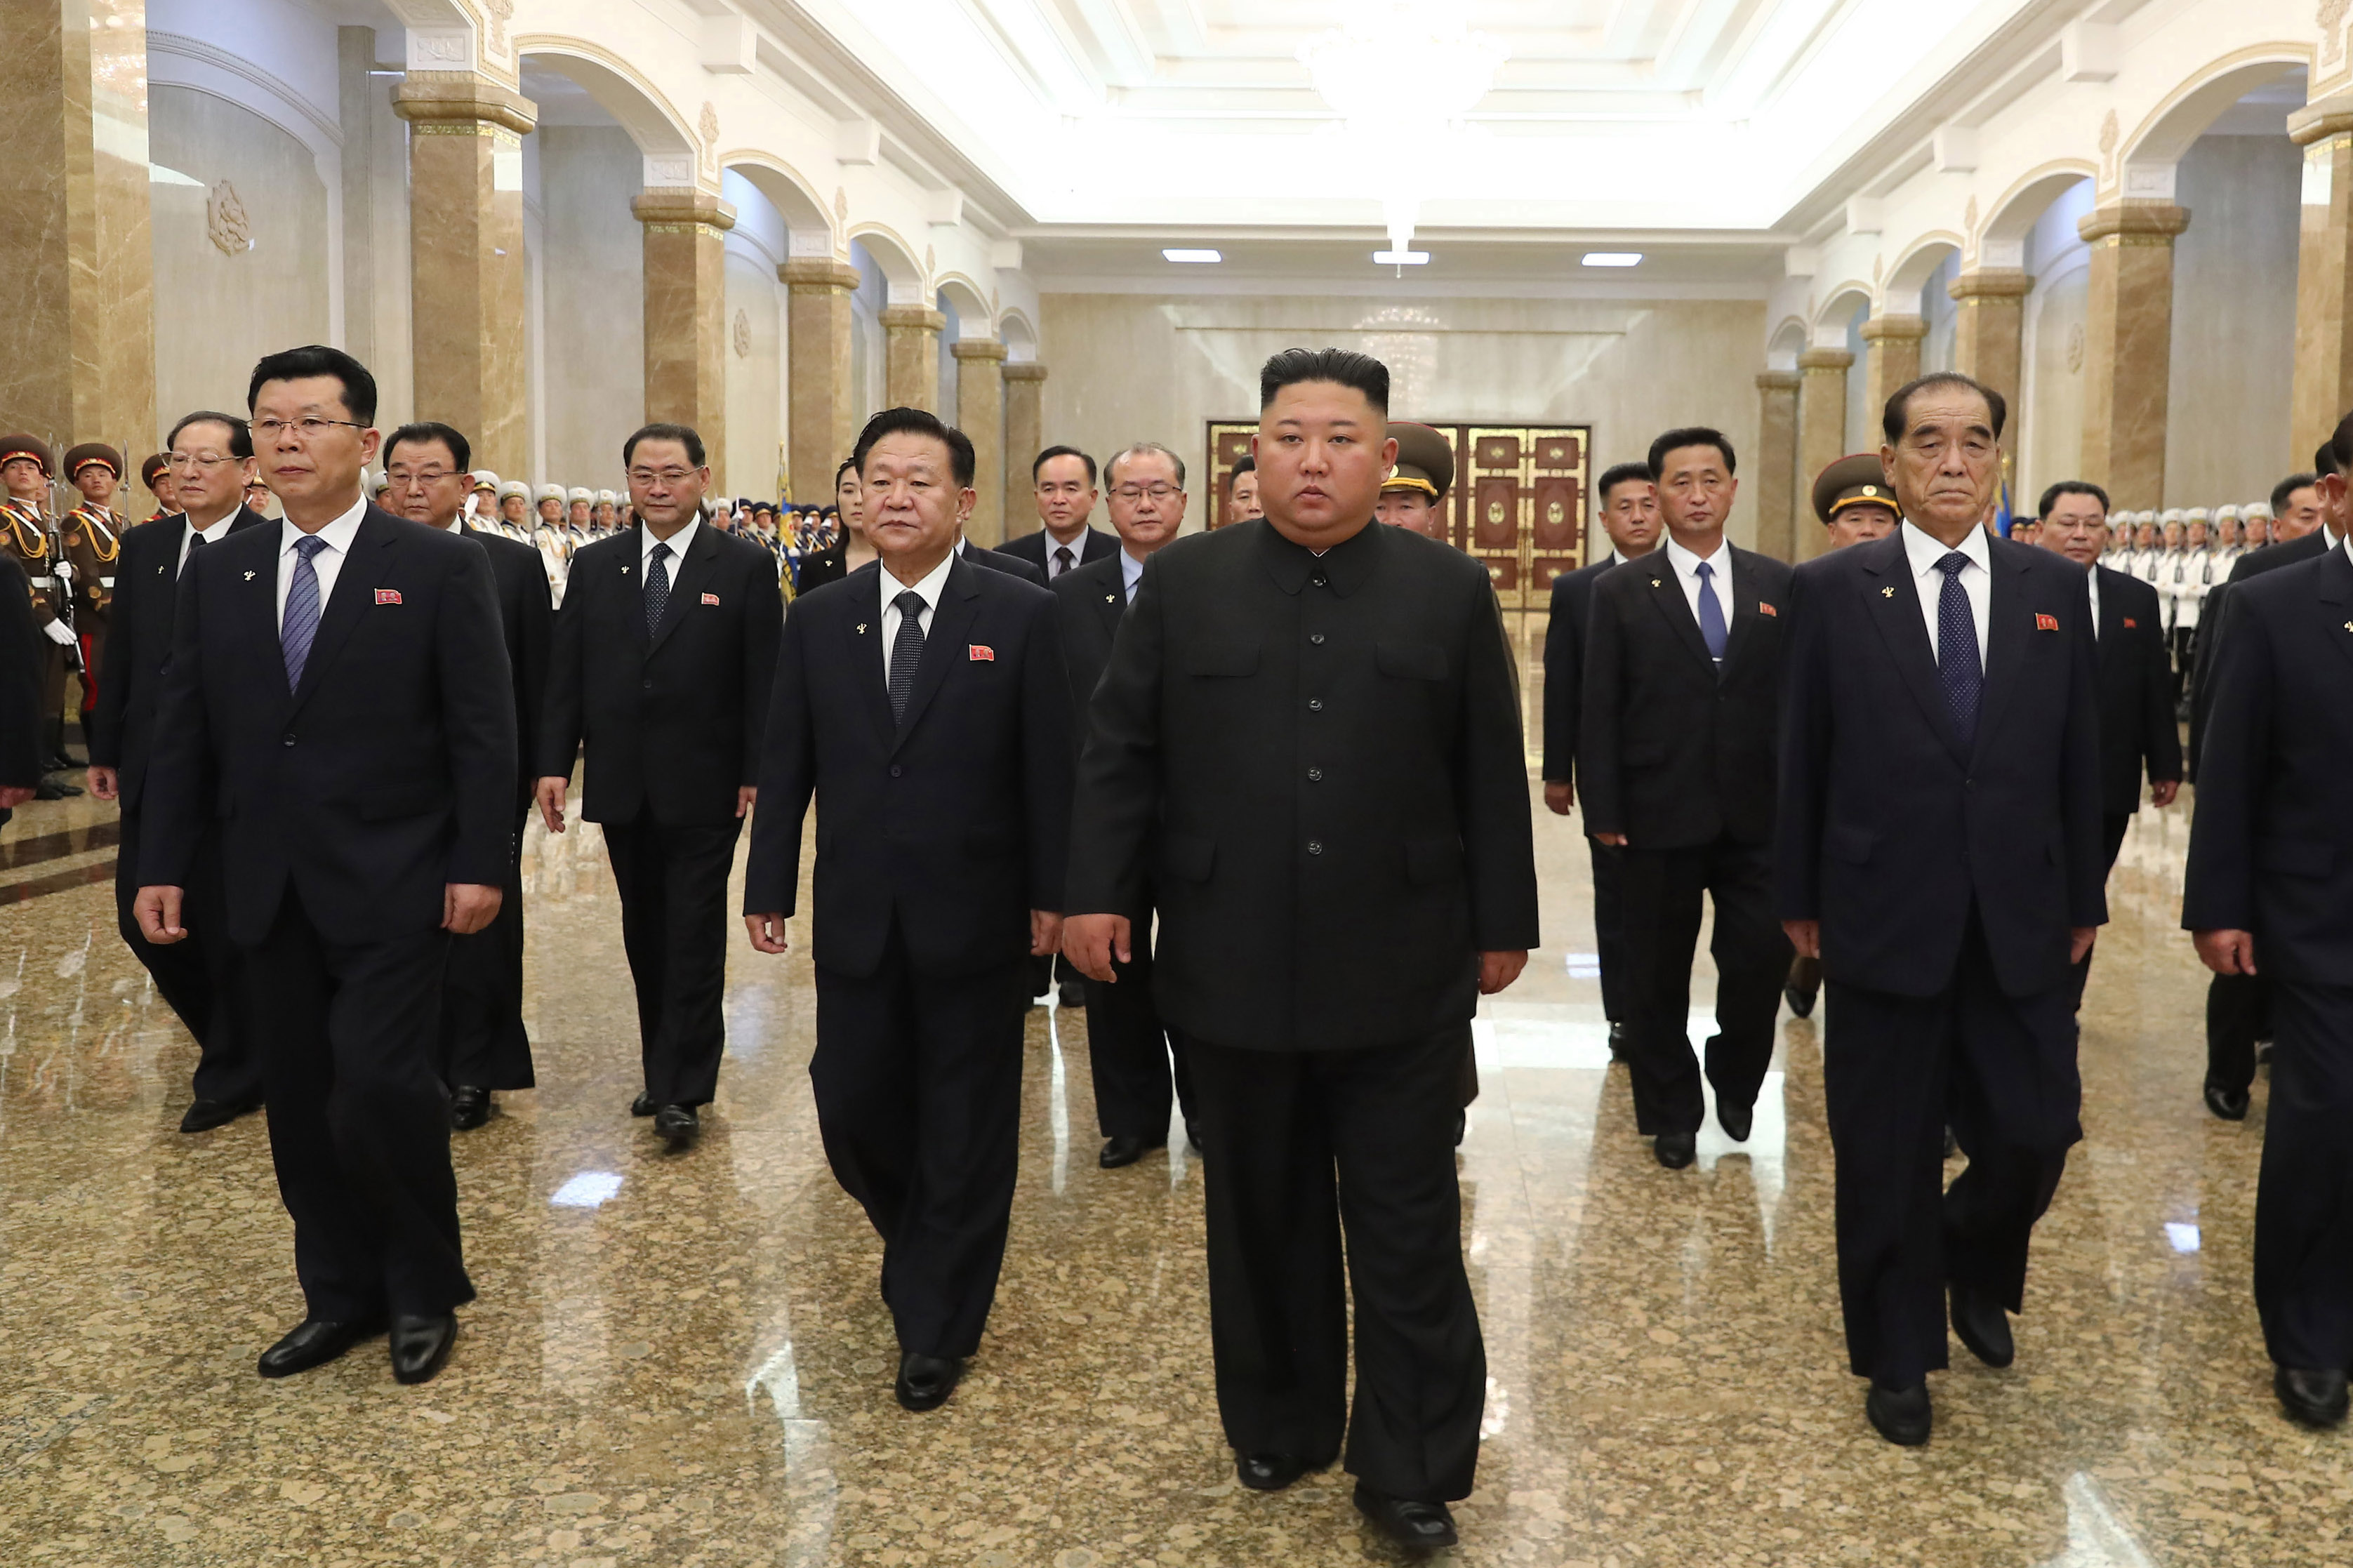 El líder norcoreano Kim Jong-un visita el Palacio Kumsusan del Sol en Pyongyang para rendir homenaje a su abuelo y al fundador de Corea del Norte, Kim Il-sung, con motivo del 26 aniversario de la muerte del ex dictador (DPA)